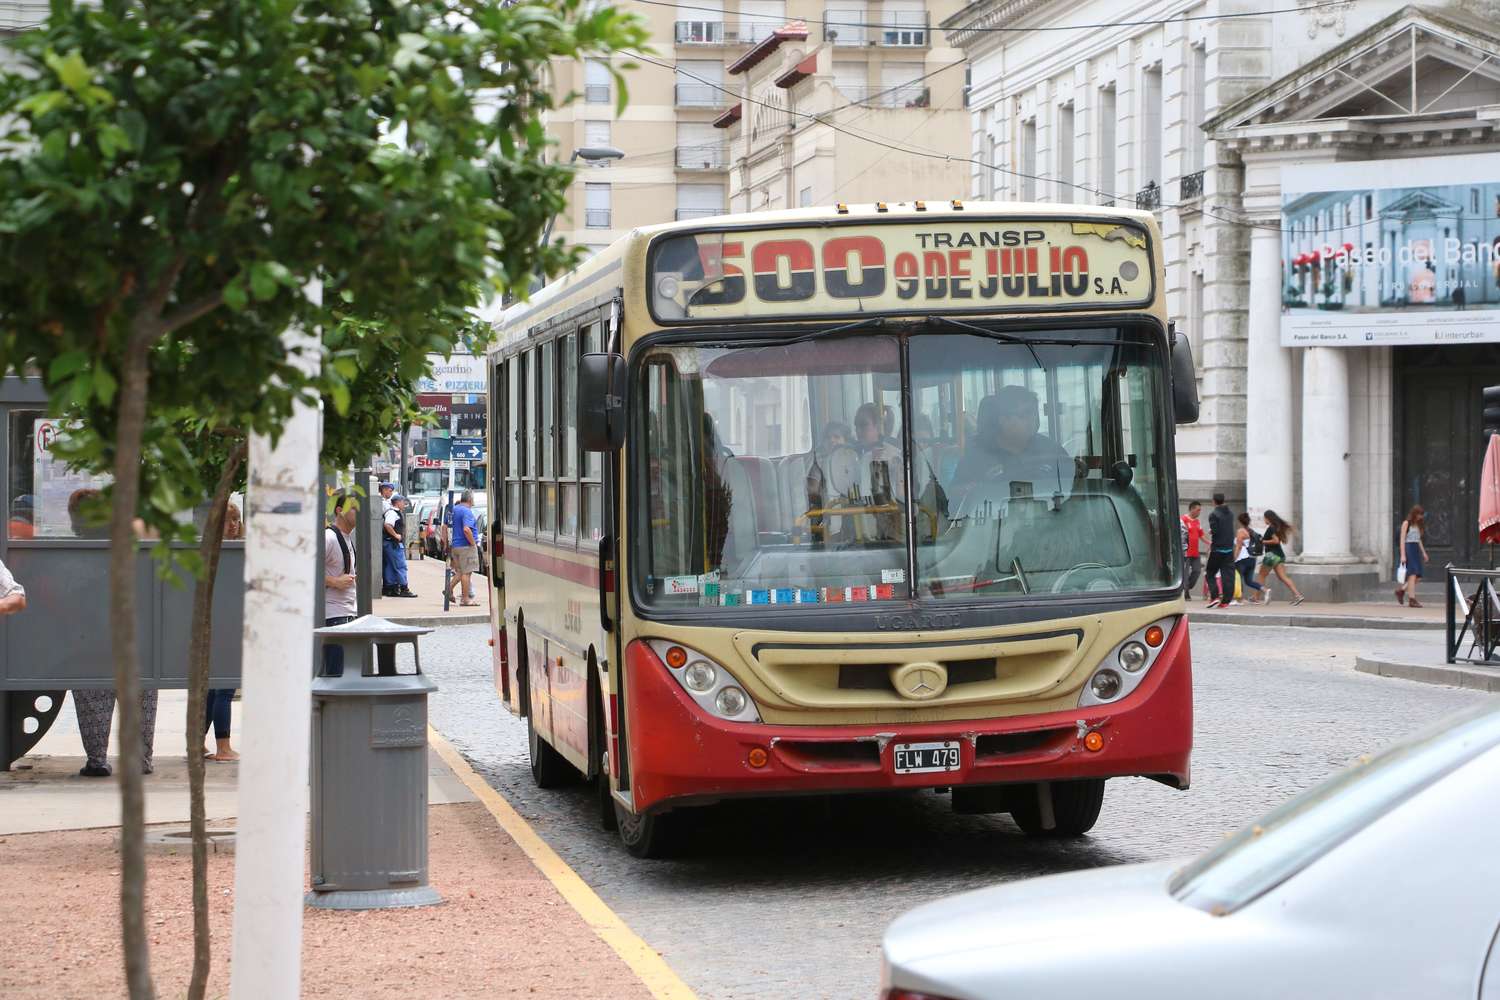 UCR – Cambiemos e Integrar aprobaron el aumento del boleto del transporte público